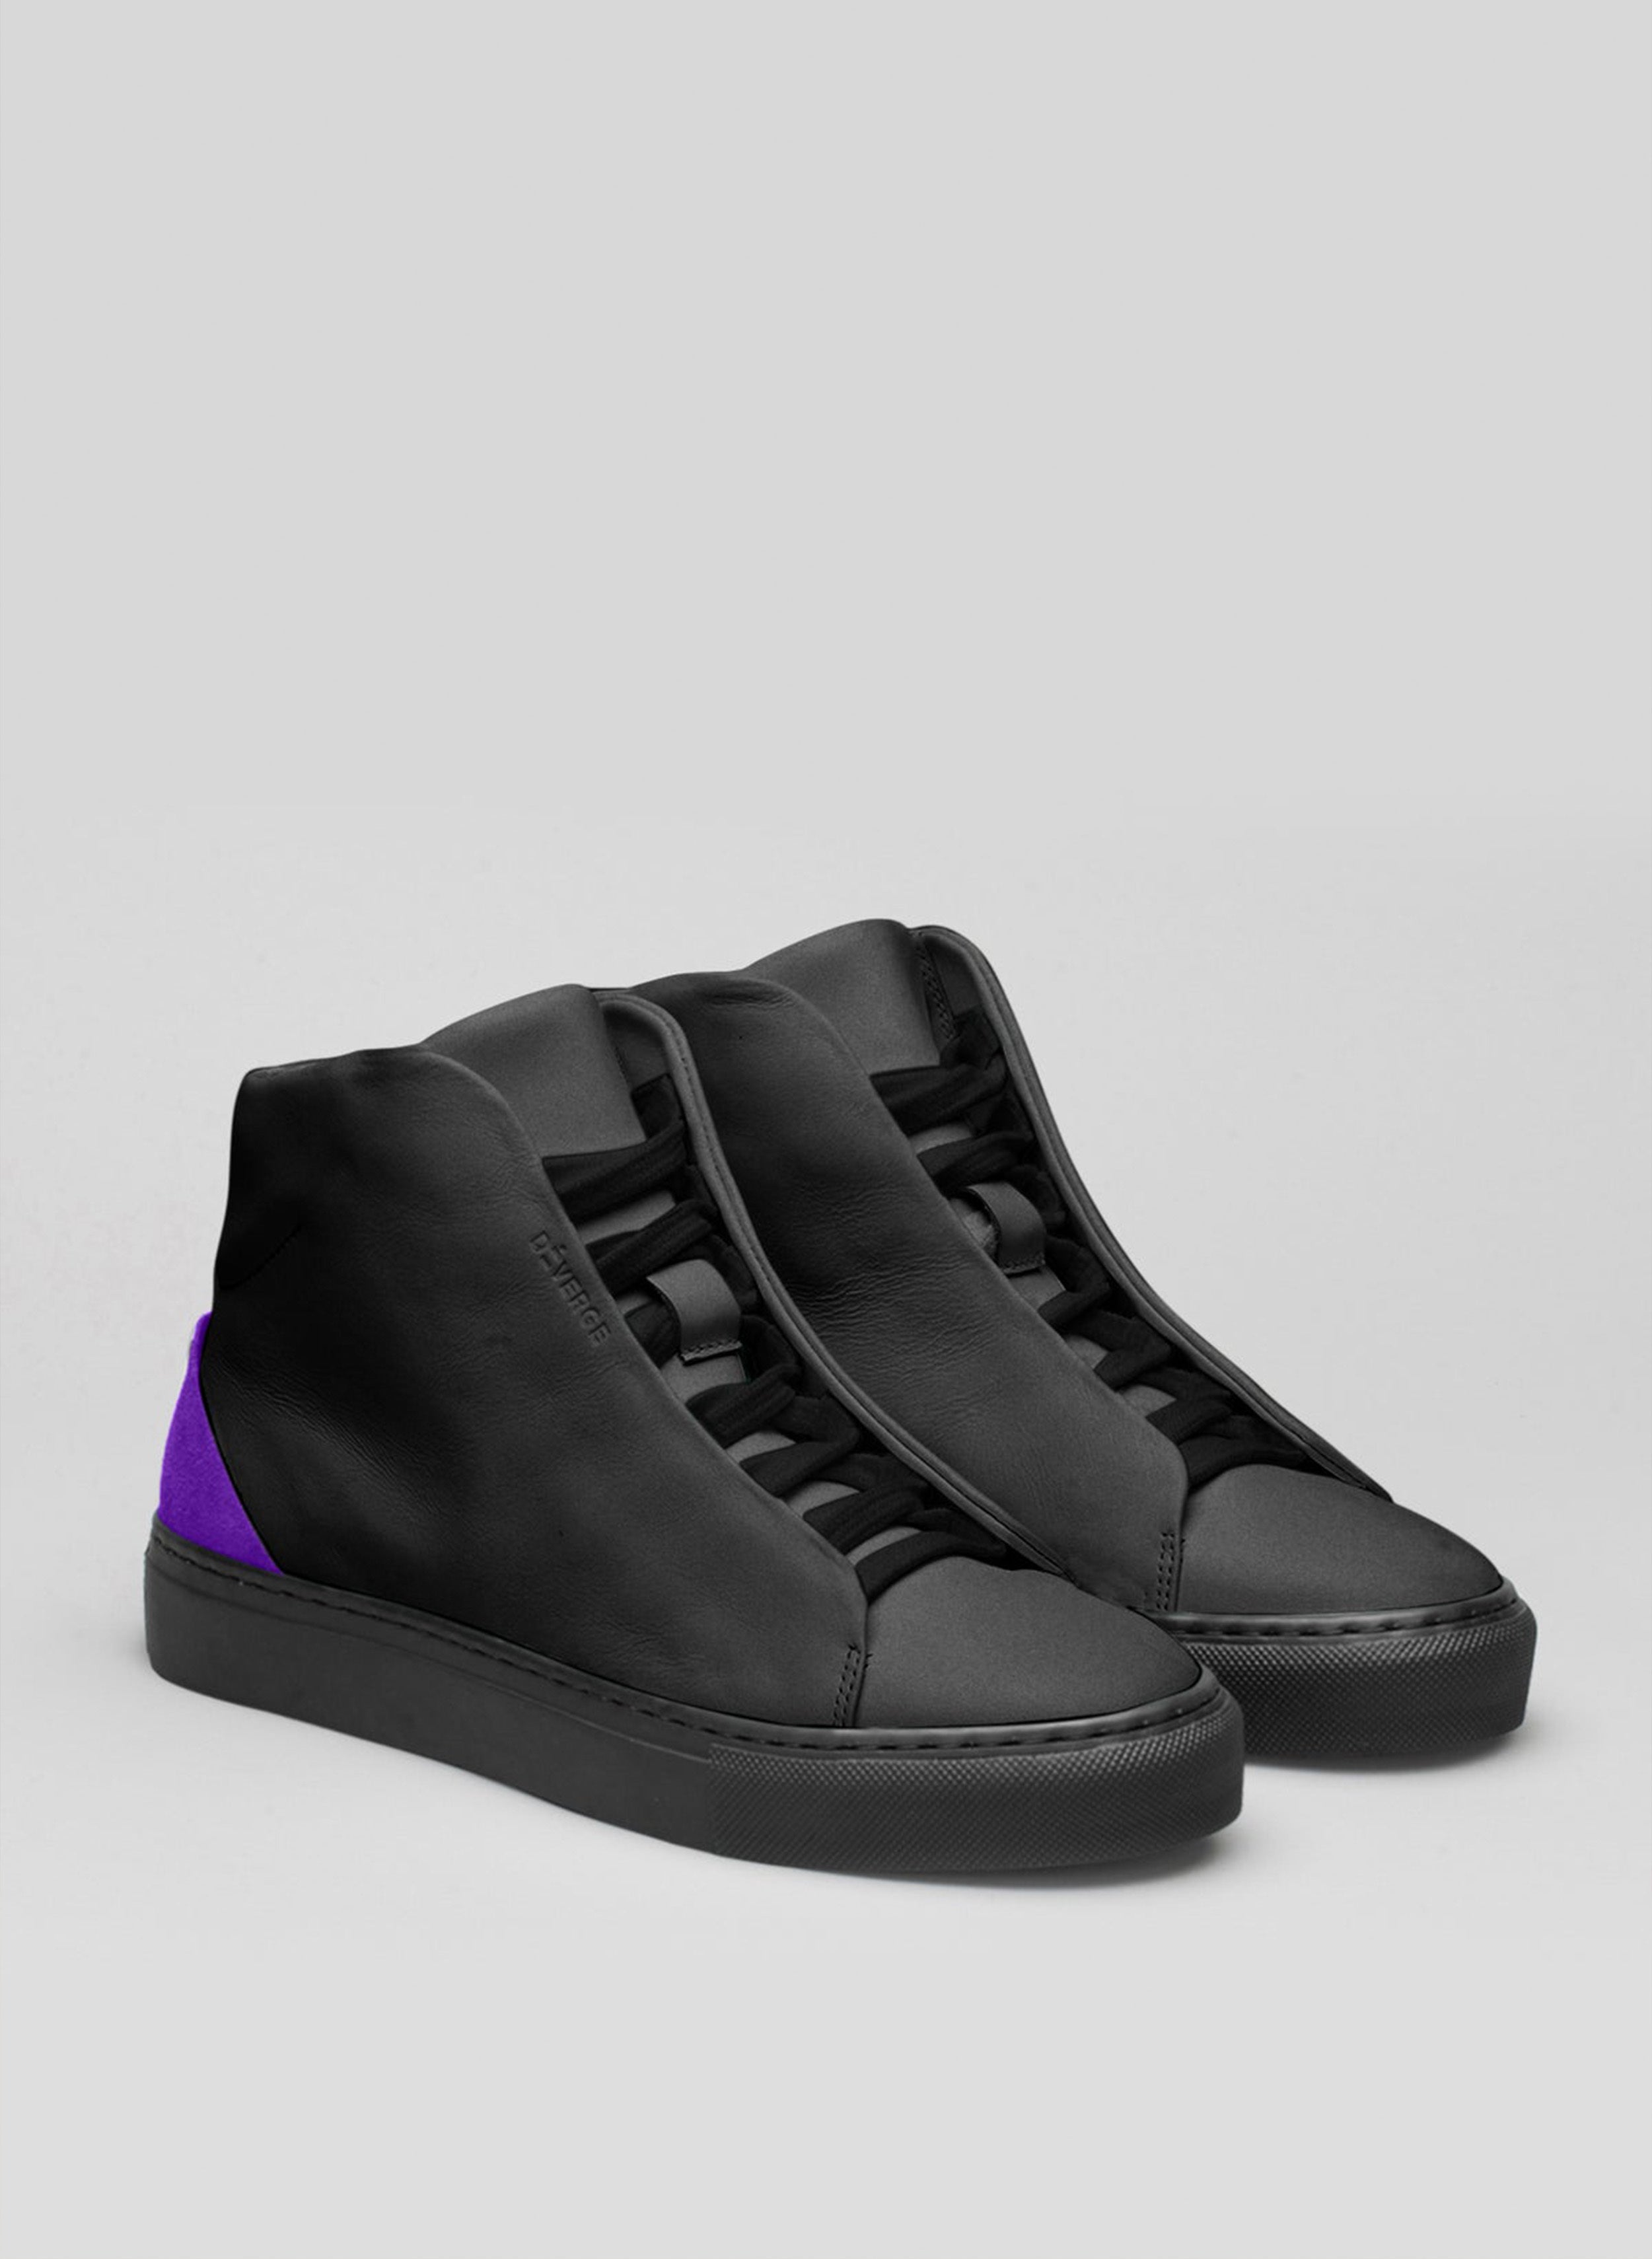 Ein Paar schwarze und lila High-Top-Schuhe sneakers, die von Diverge präsentiert werden.